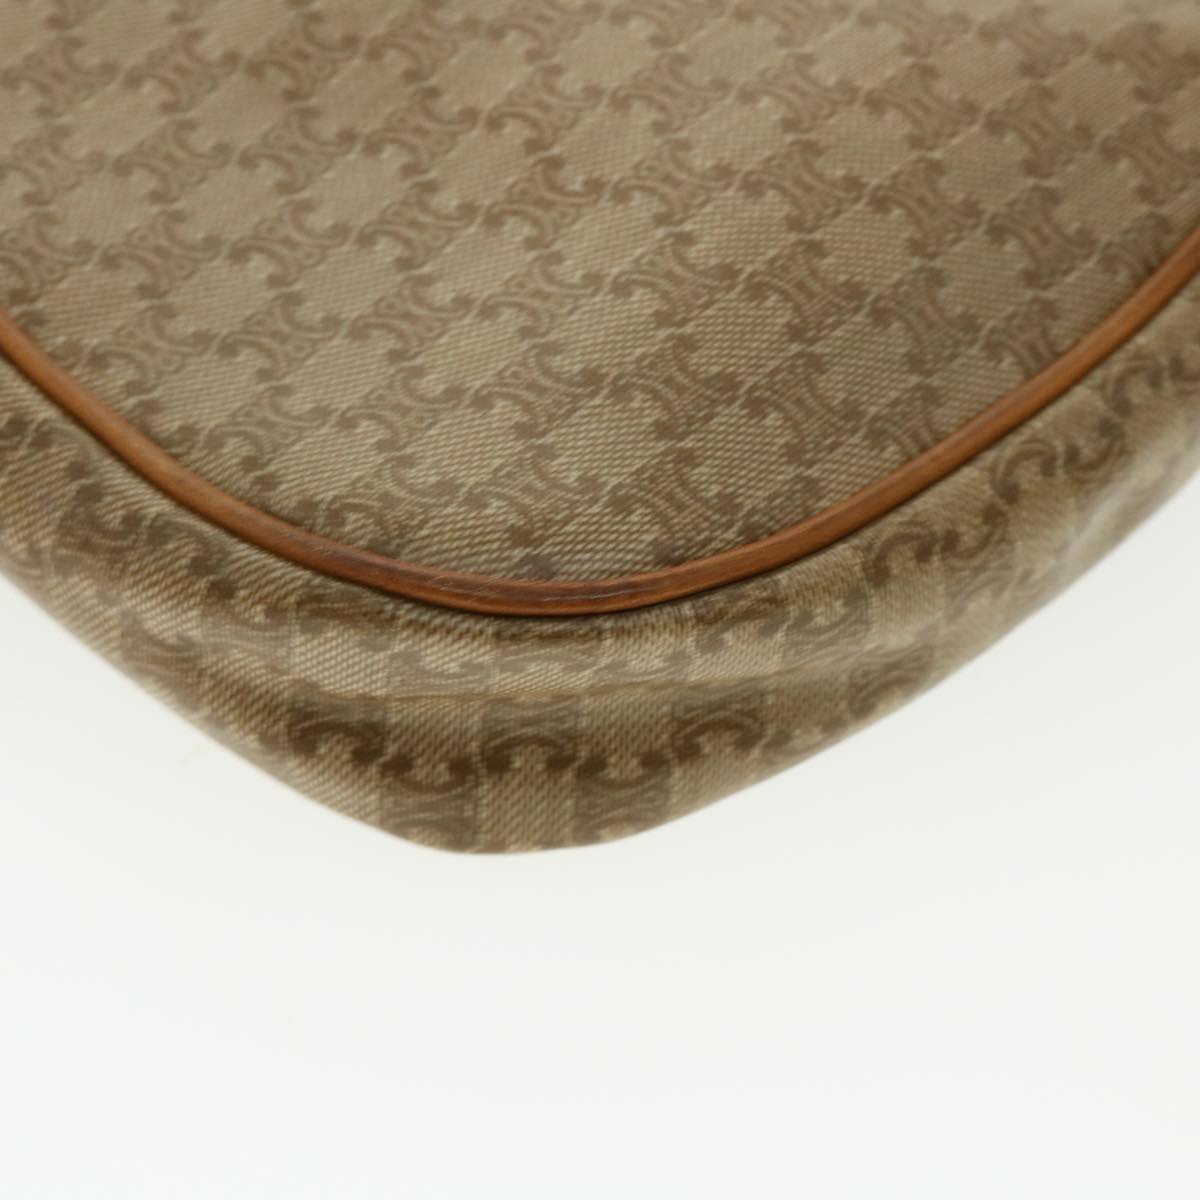 CELINE Macadam Canvas Shoulder Bag PVC Leather Beige Auth 35355